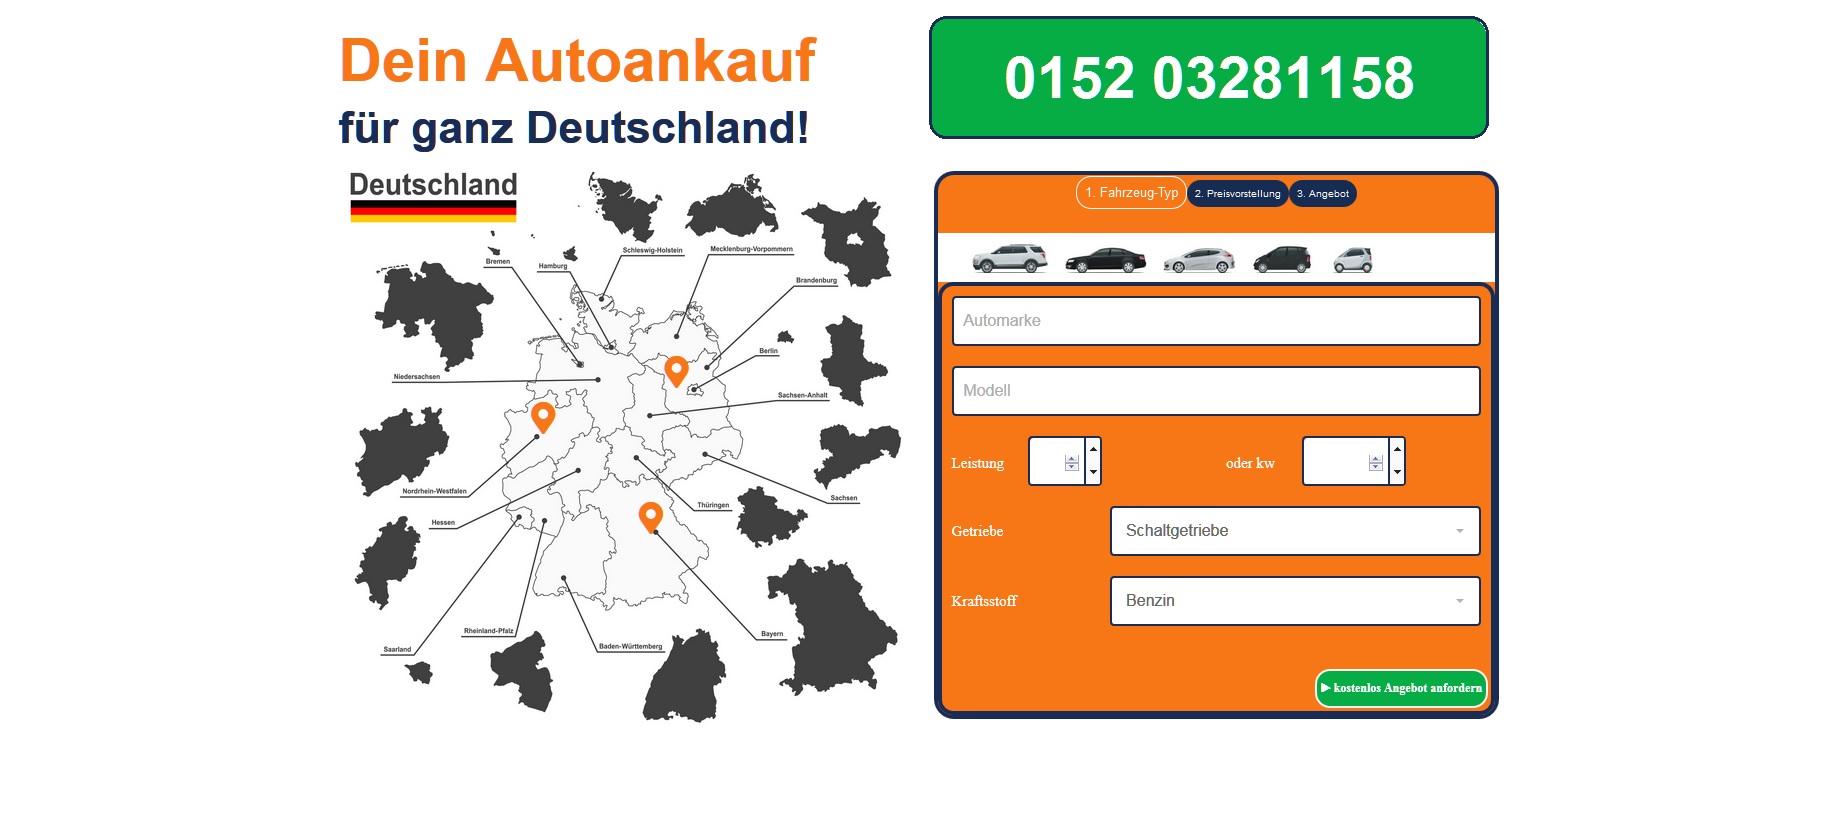 In Düsseldorf profitieren die Besitzer von Unfallwagen von den unschlagbaren Konditionen des Gebrauchtwagen Ankaufs